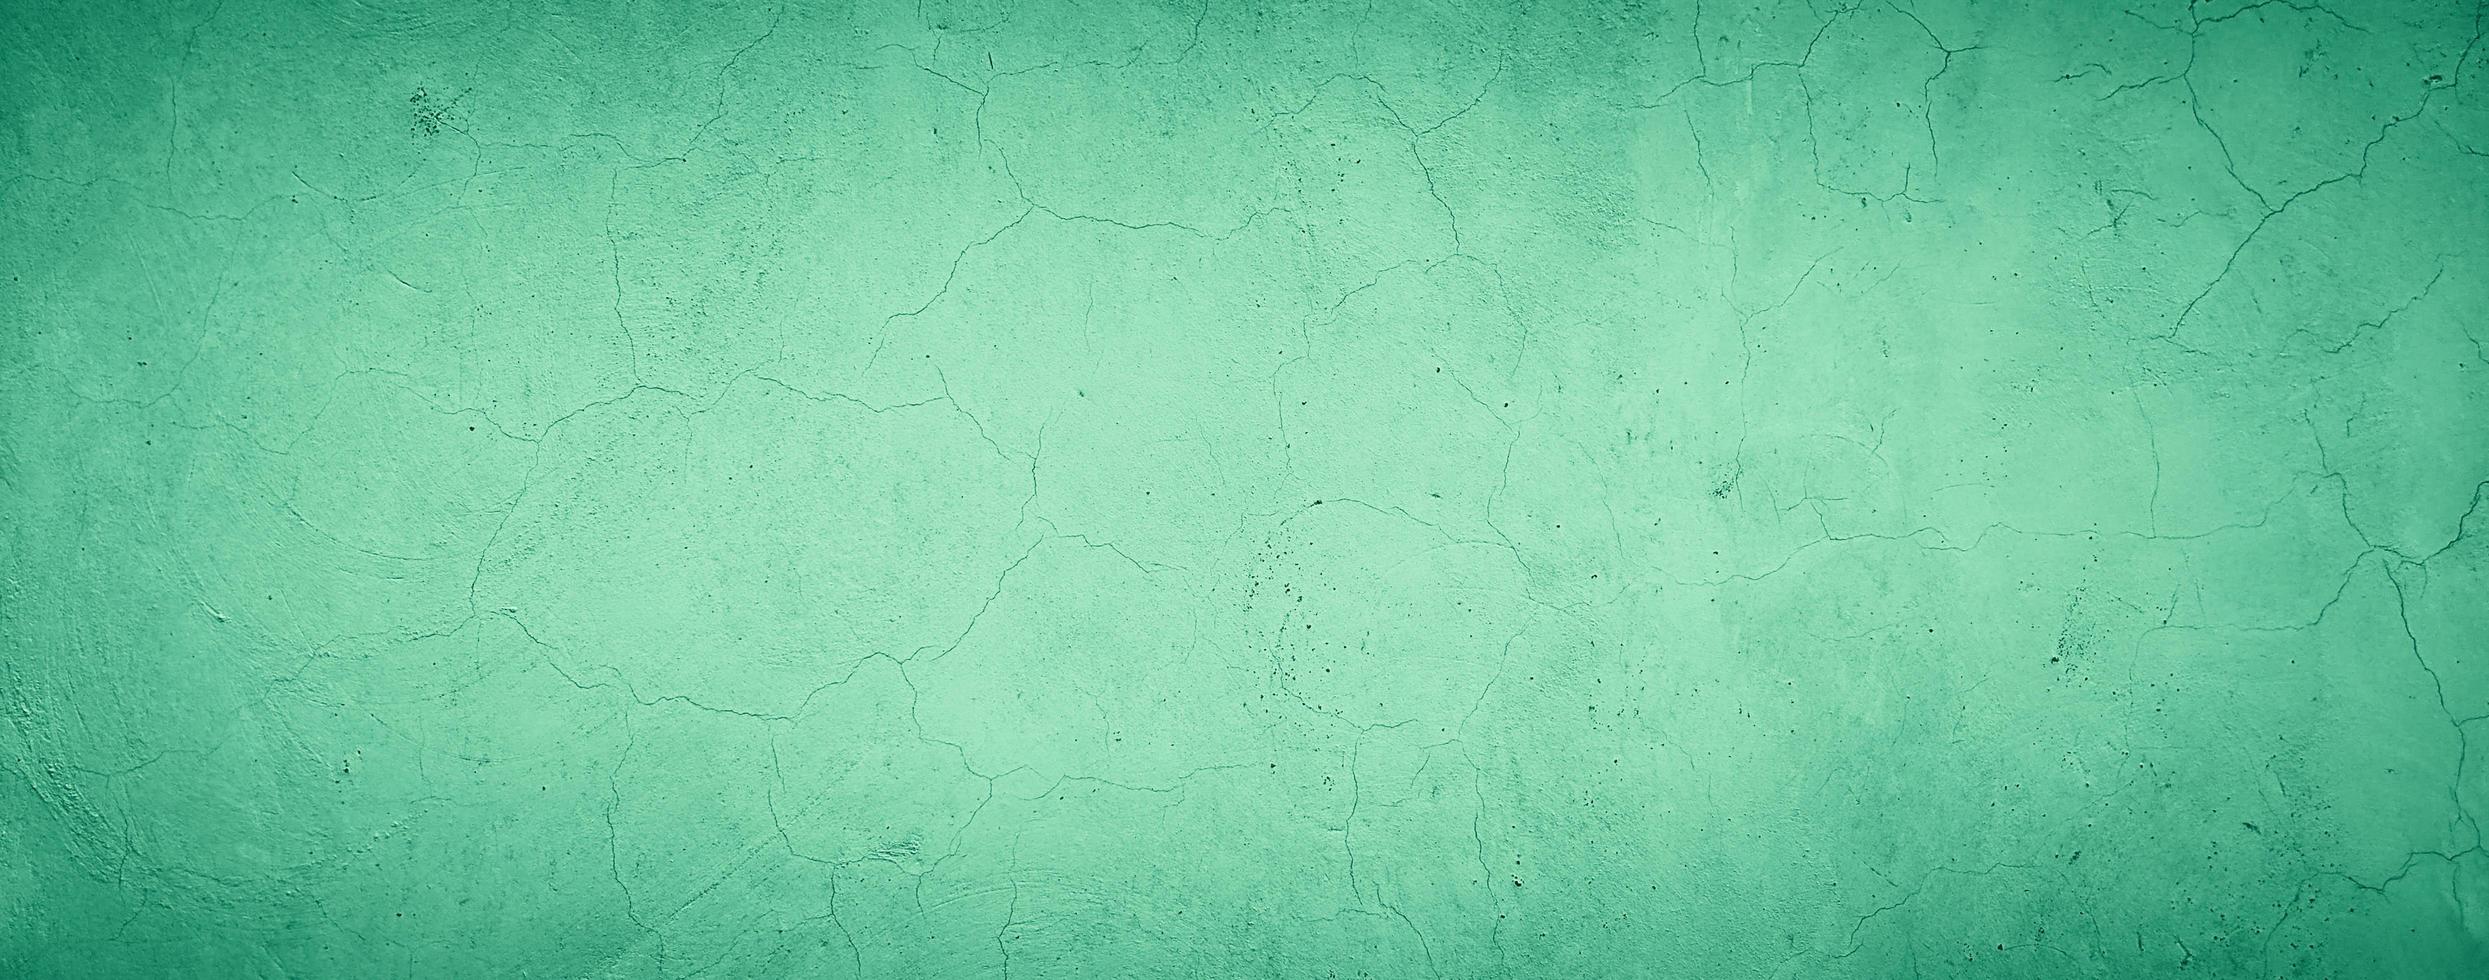 abstrakt grungy betongvägg textur bakgrund med grön pastellfärg foto